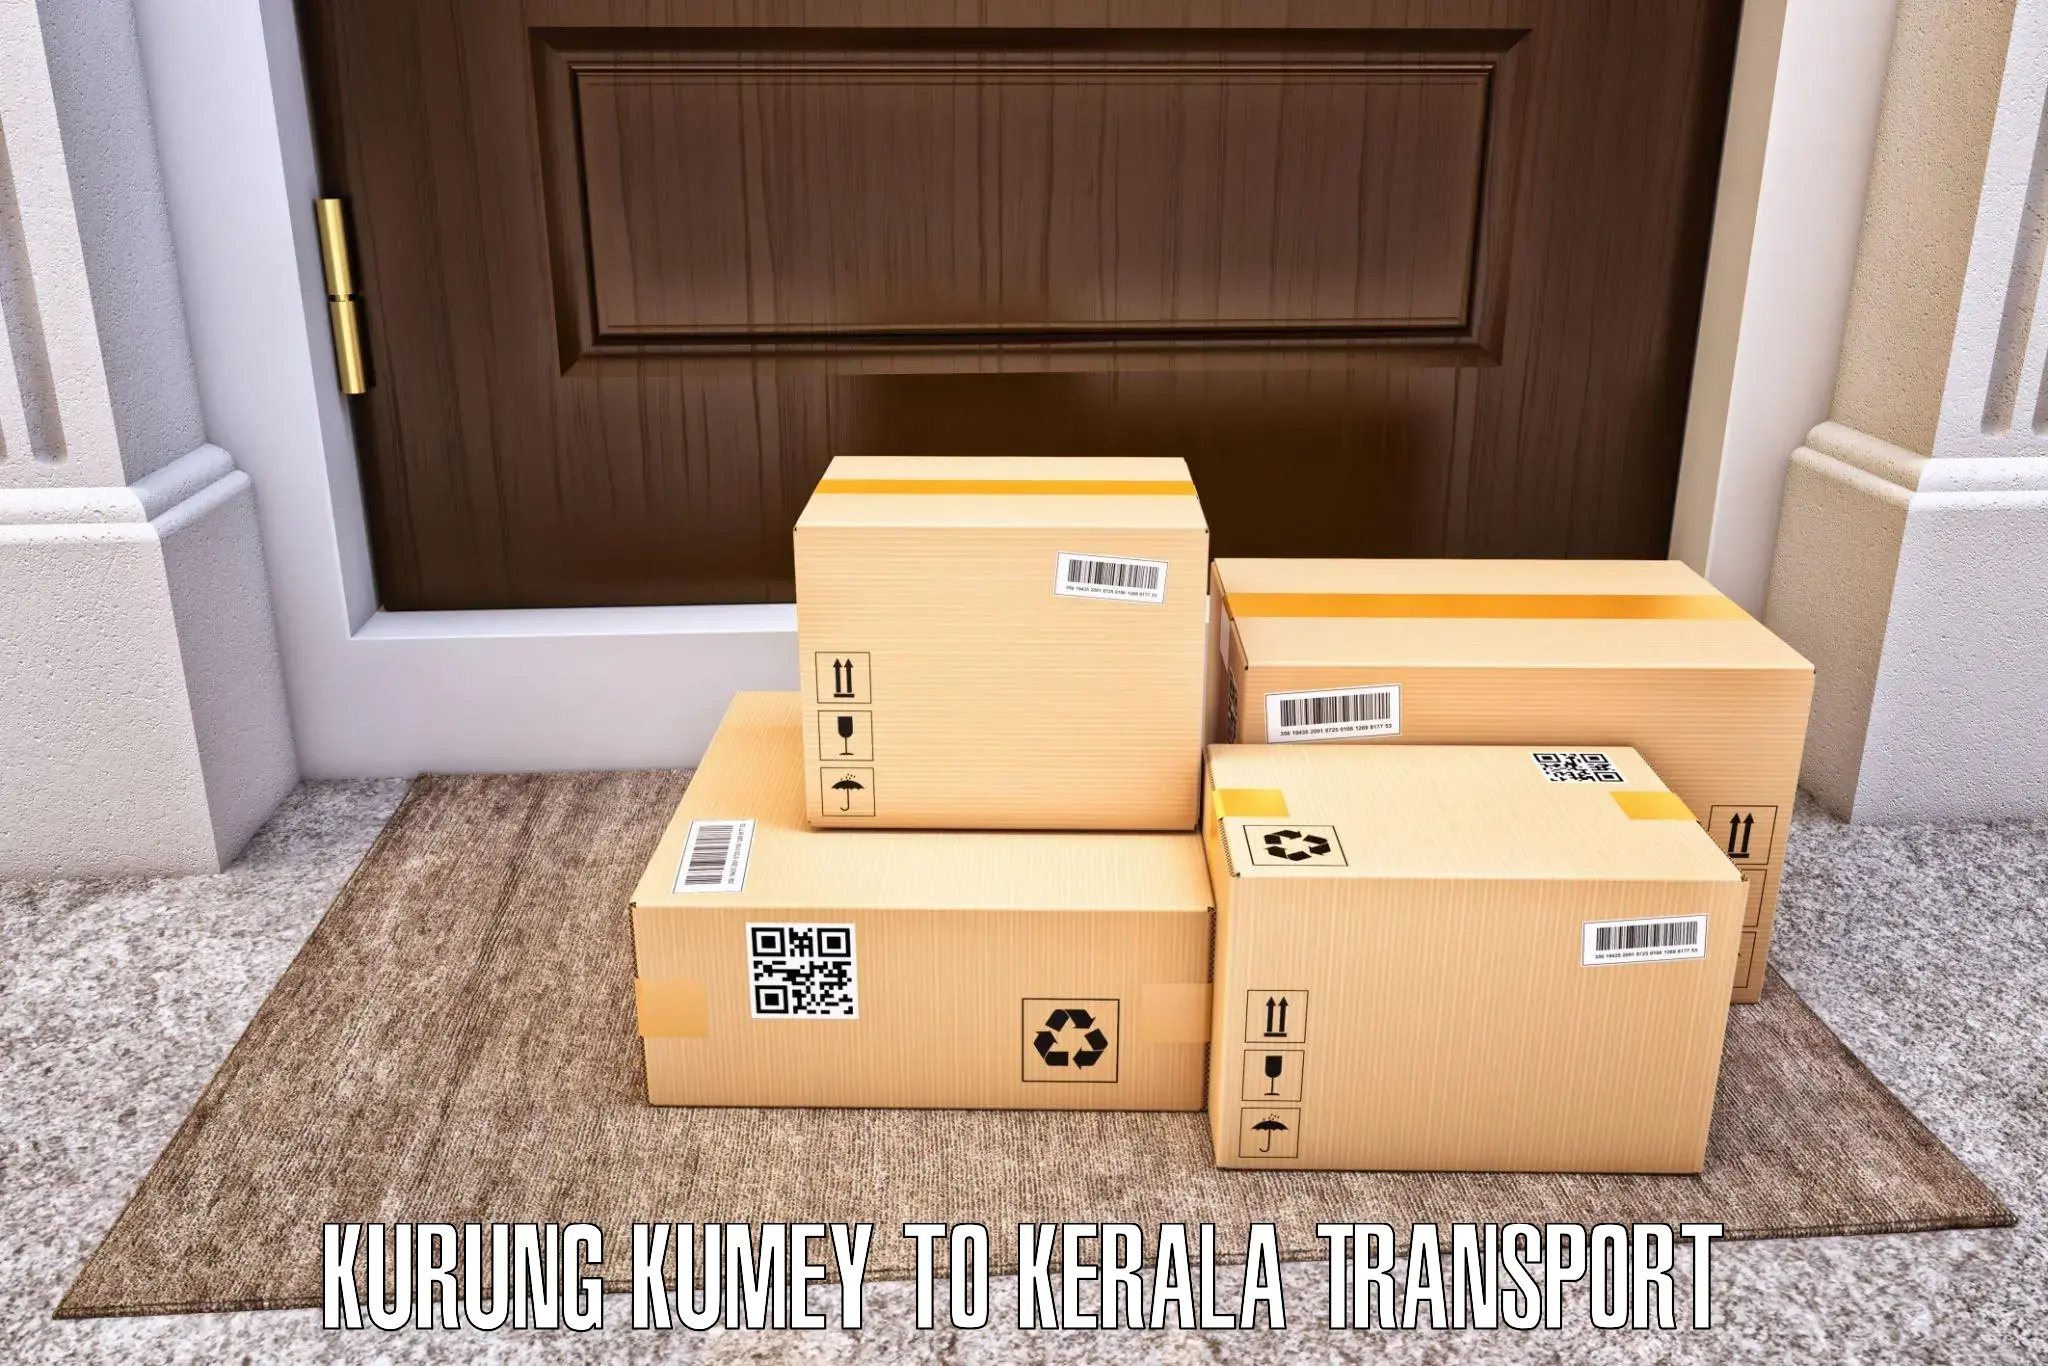 Container transport service Kurung Kumey to Nedumkandam